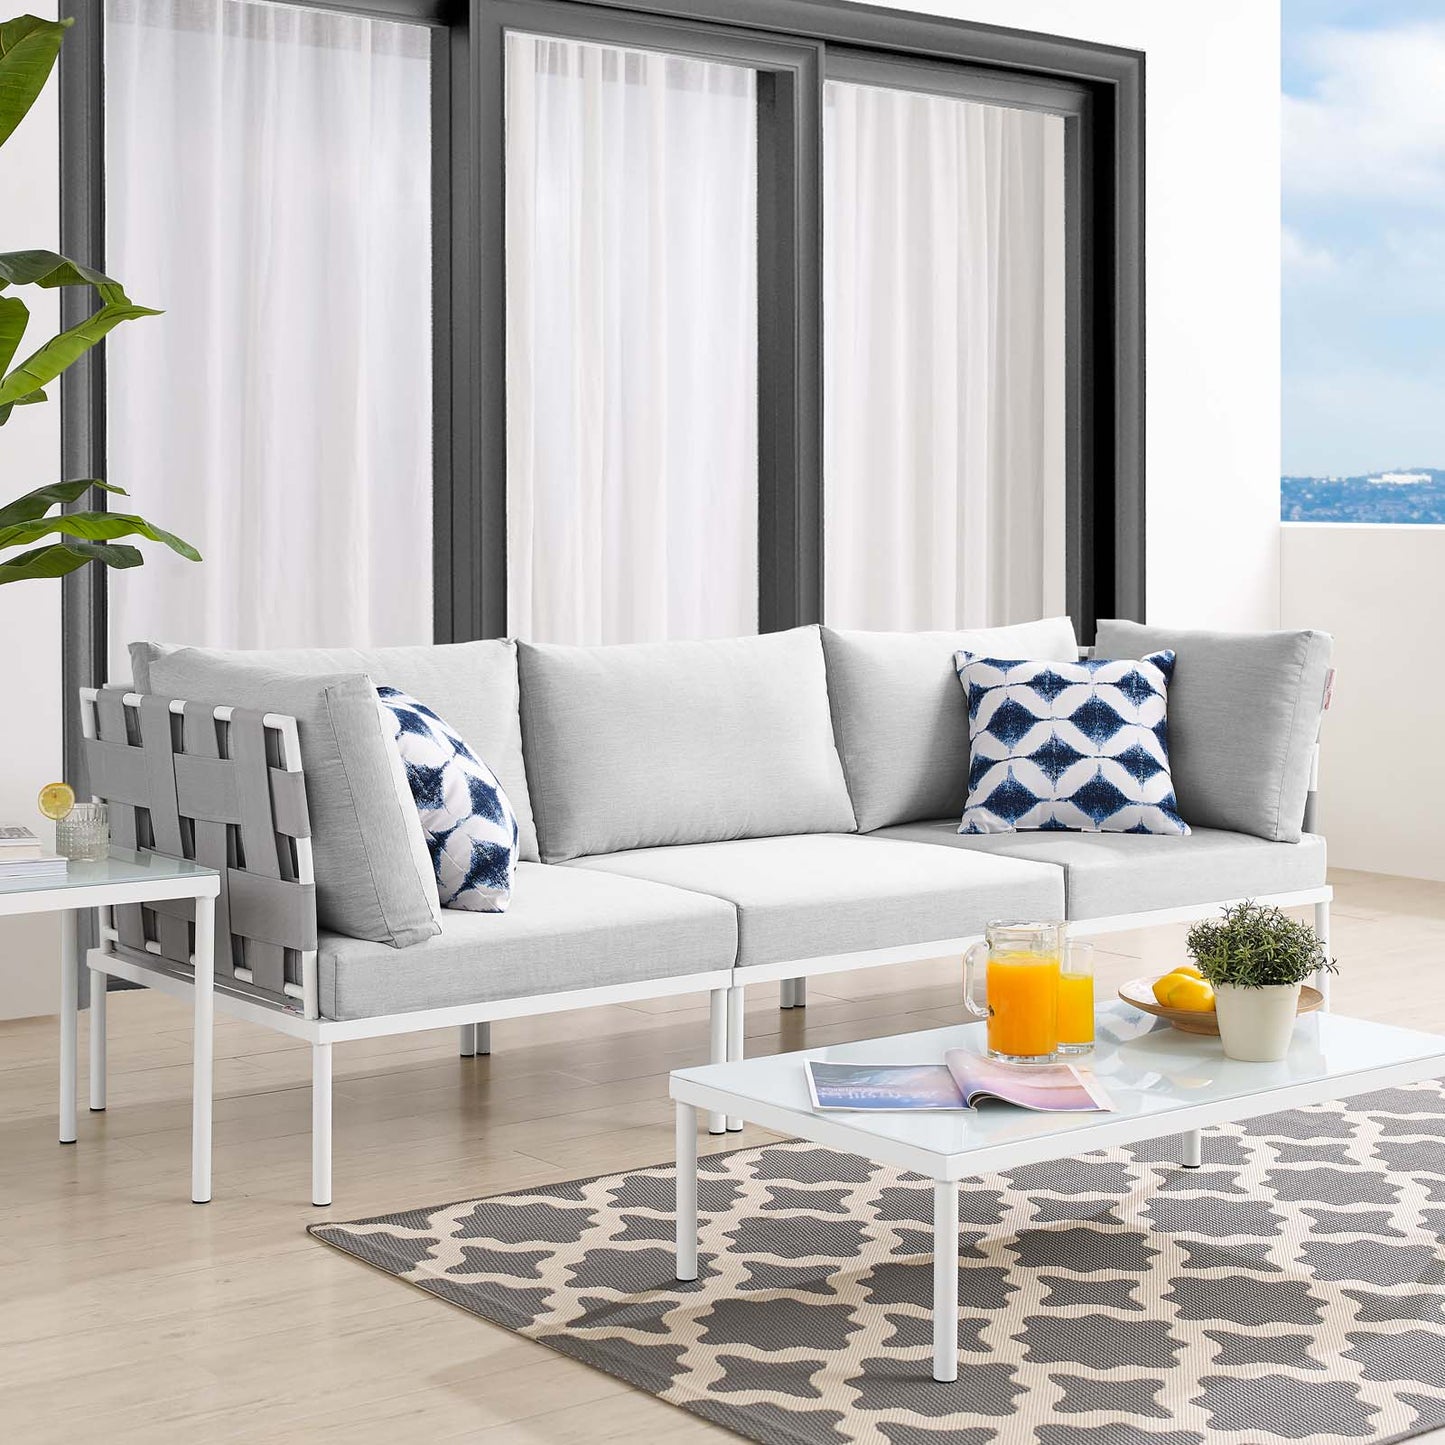 Harmony Sunbrella® Outdoor Patio Aluminum Sofa Gray Gray EEI-4968-GRY-GRY